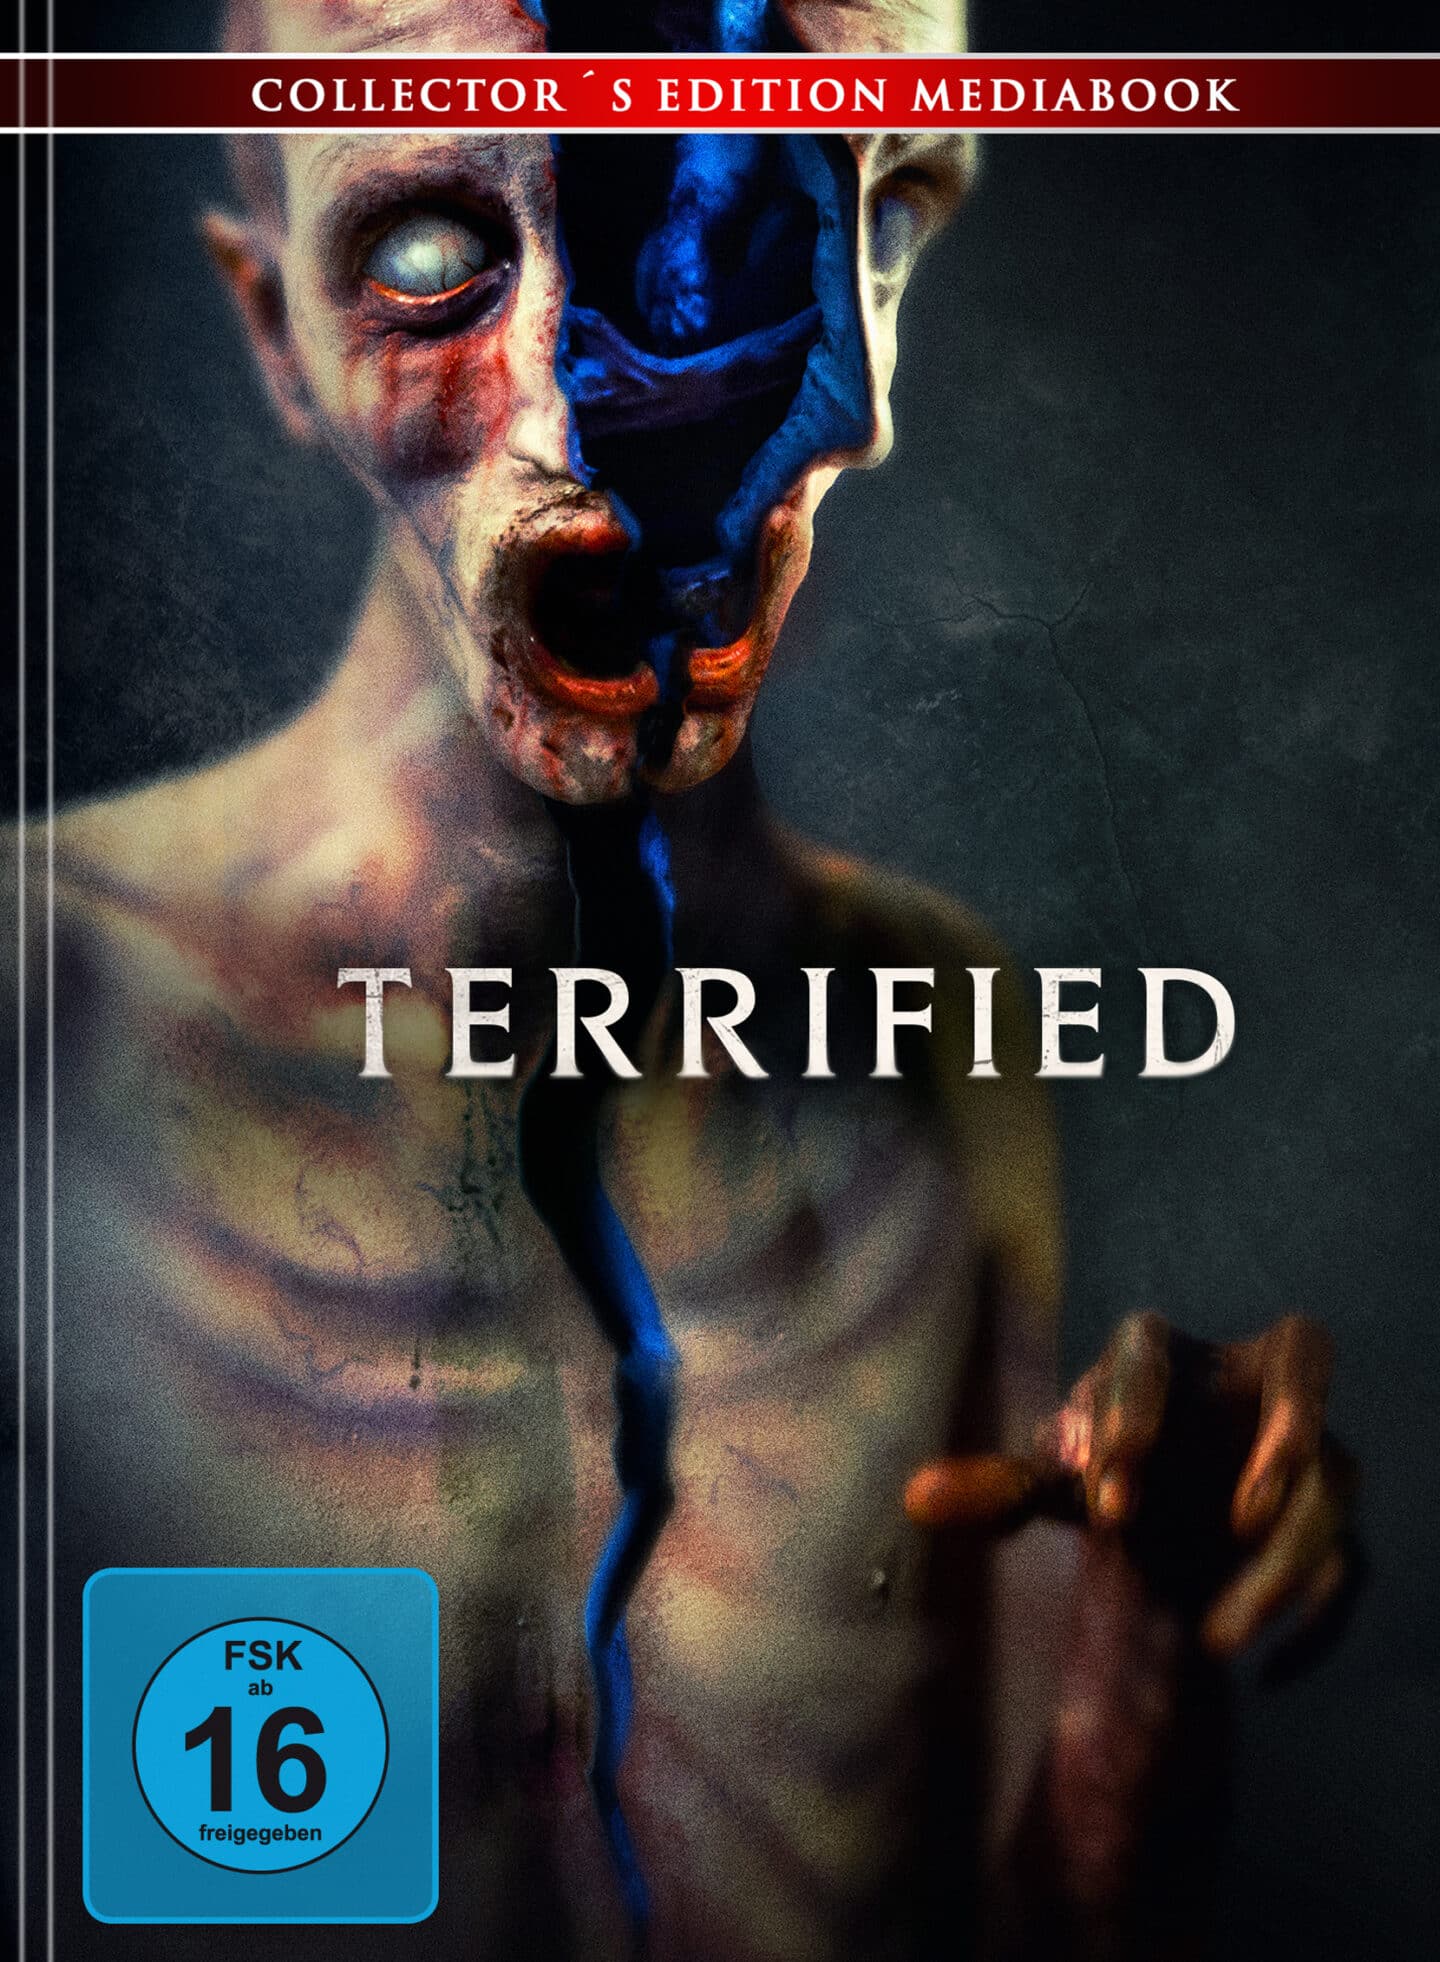 Terrified - Mediabook Cover